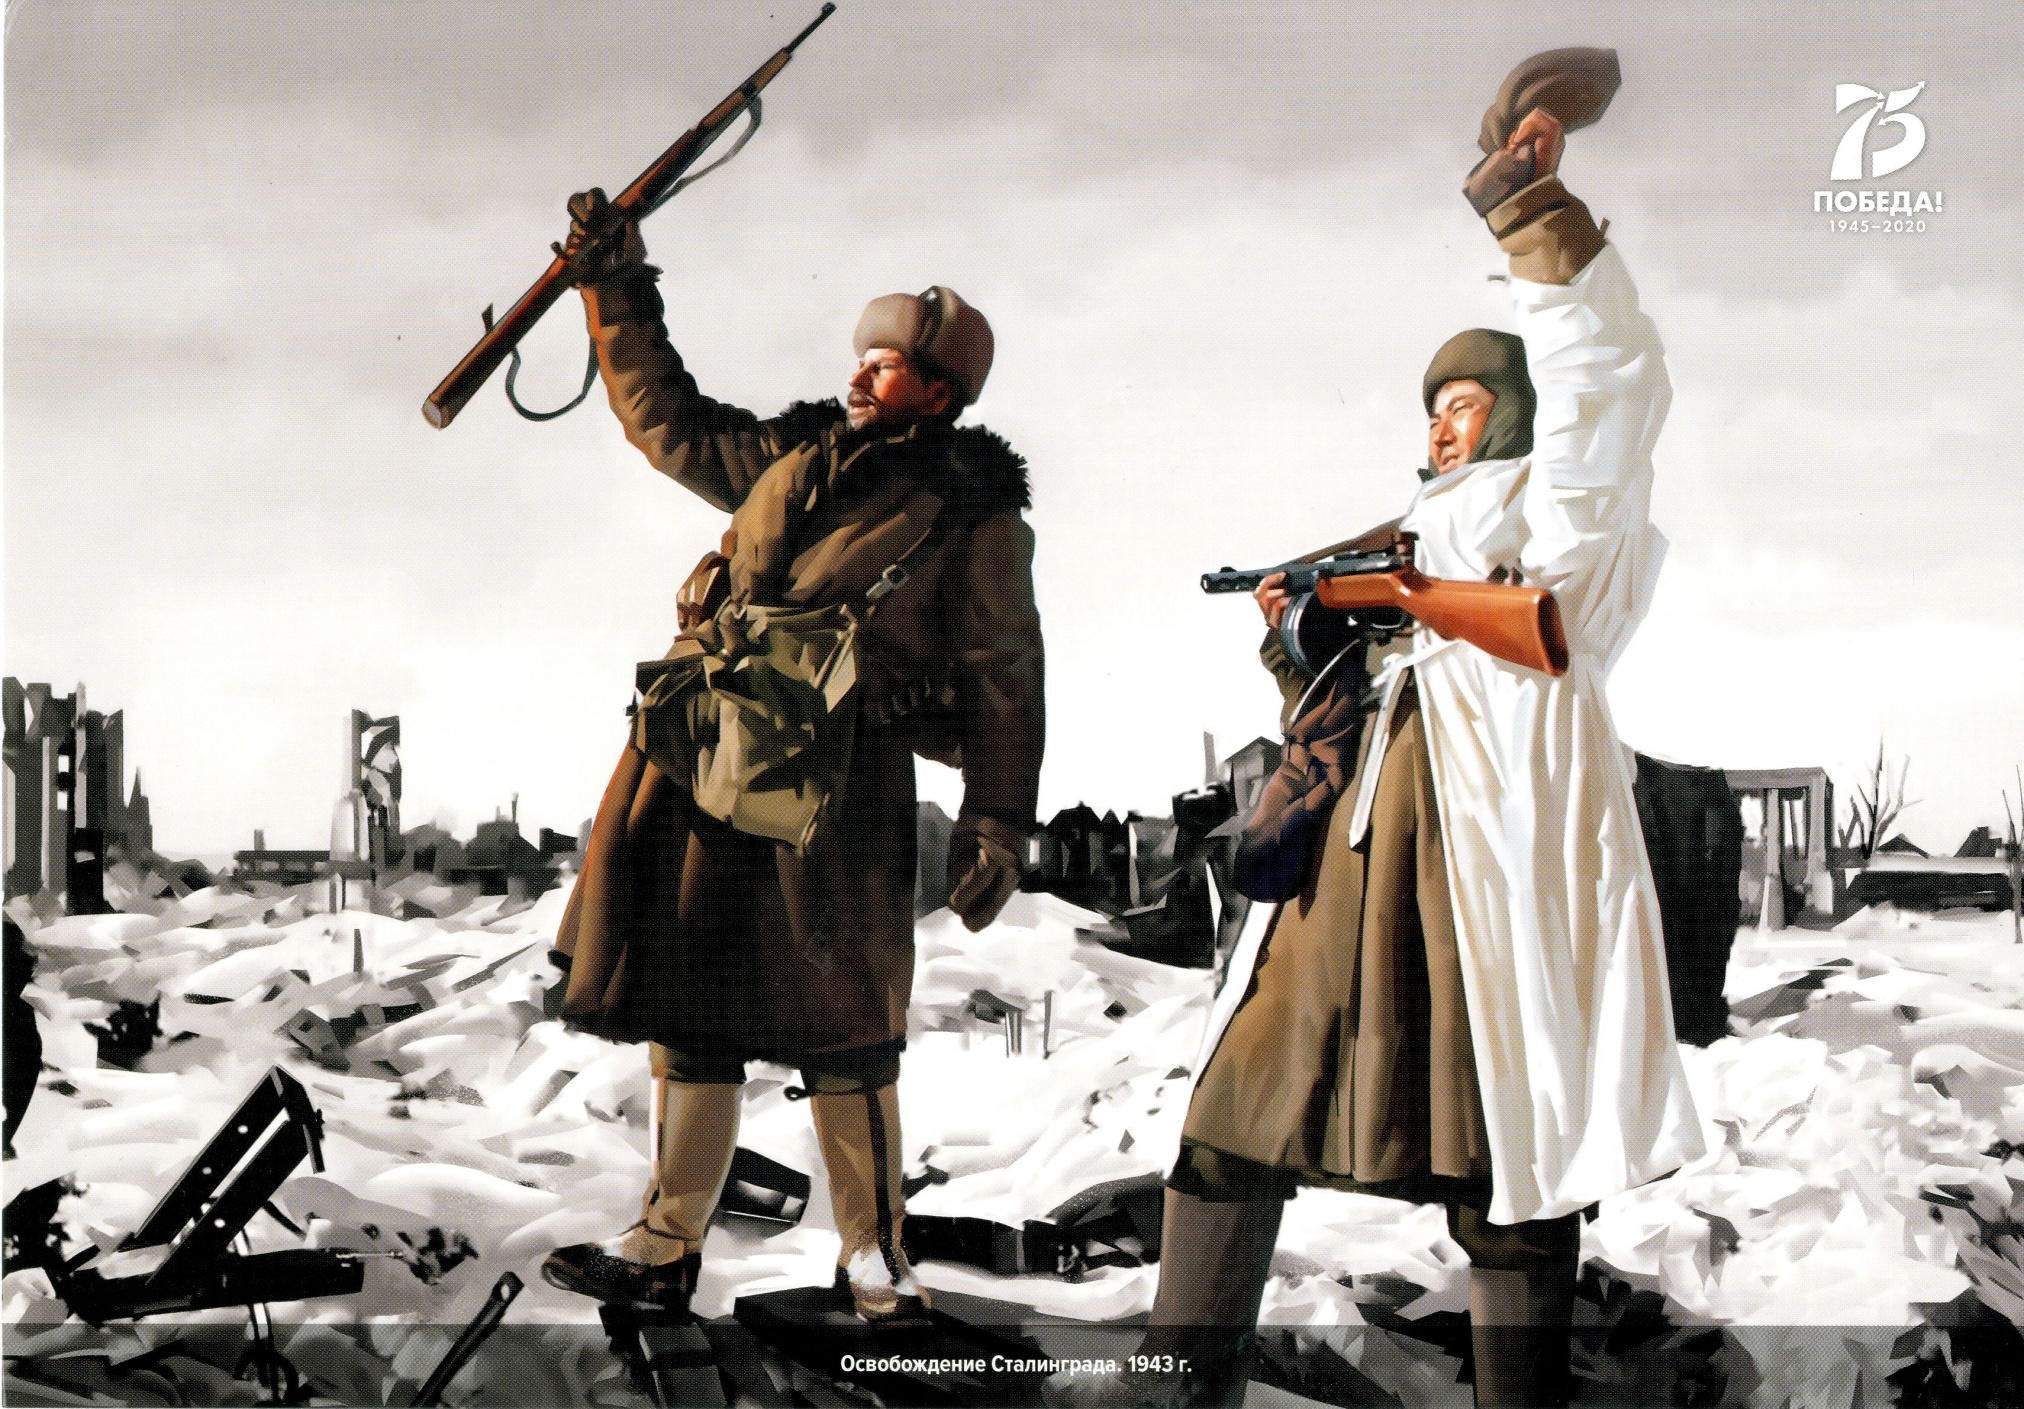 Открытка иллюстративная «Освобождение Сталинграда. 1943 год». 2020 год.